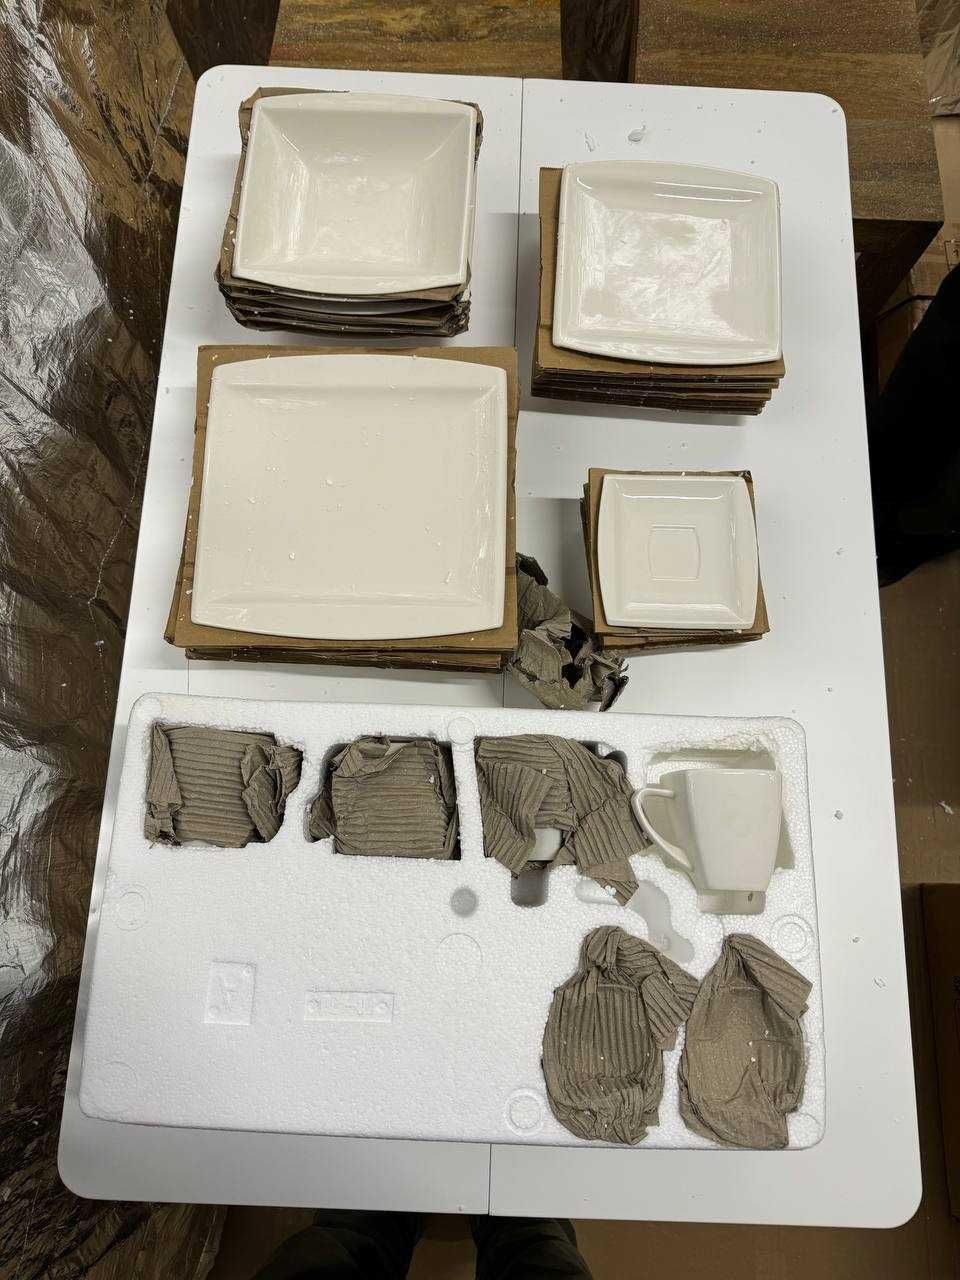 MALACASA Blance biały zestaw obiadowy z porcelany dla 6 osób